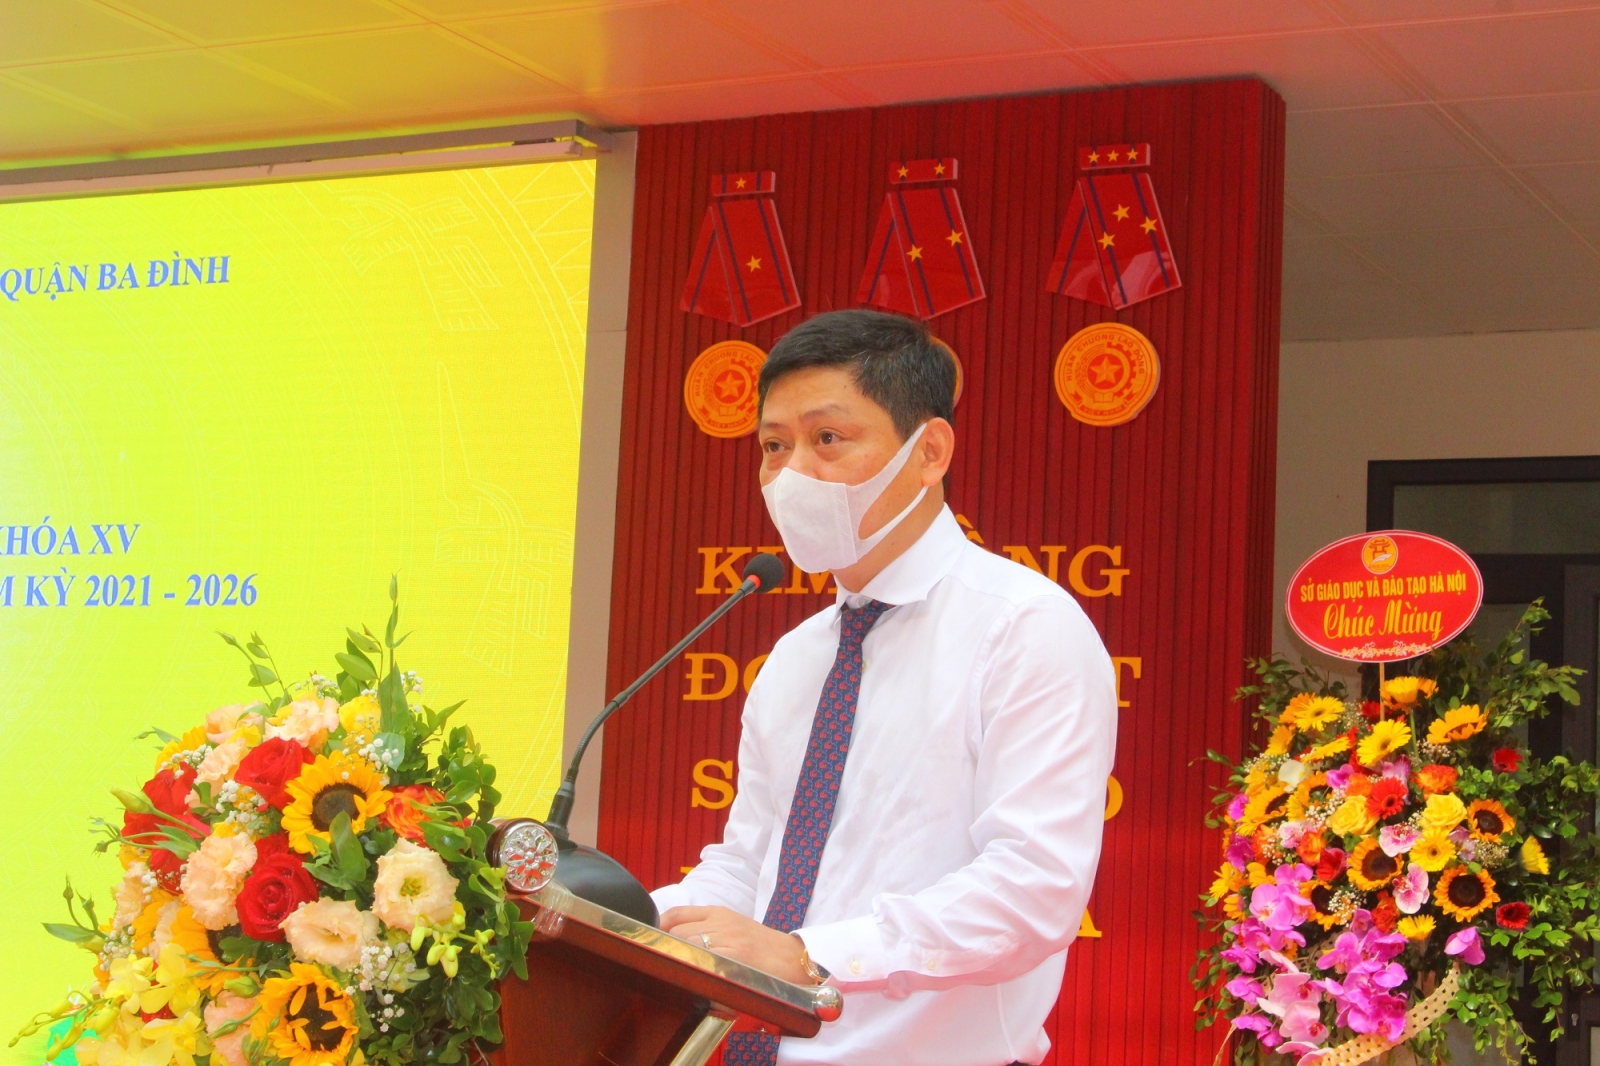 Hà Nội: Gắn biển công trình trường học cấp thành phố chào mừng Bầu cử  - Ảnh minh hoạ 4